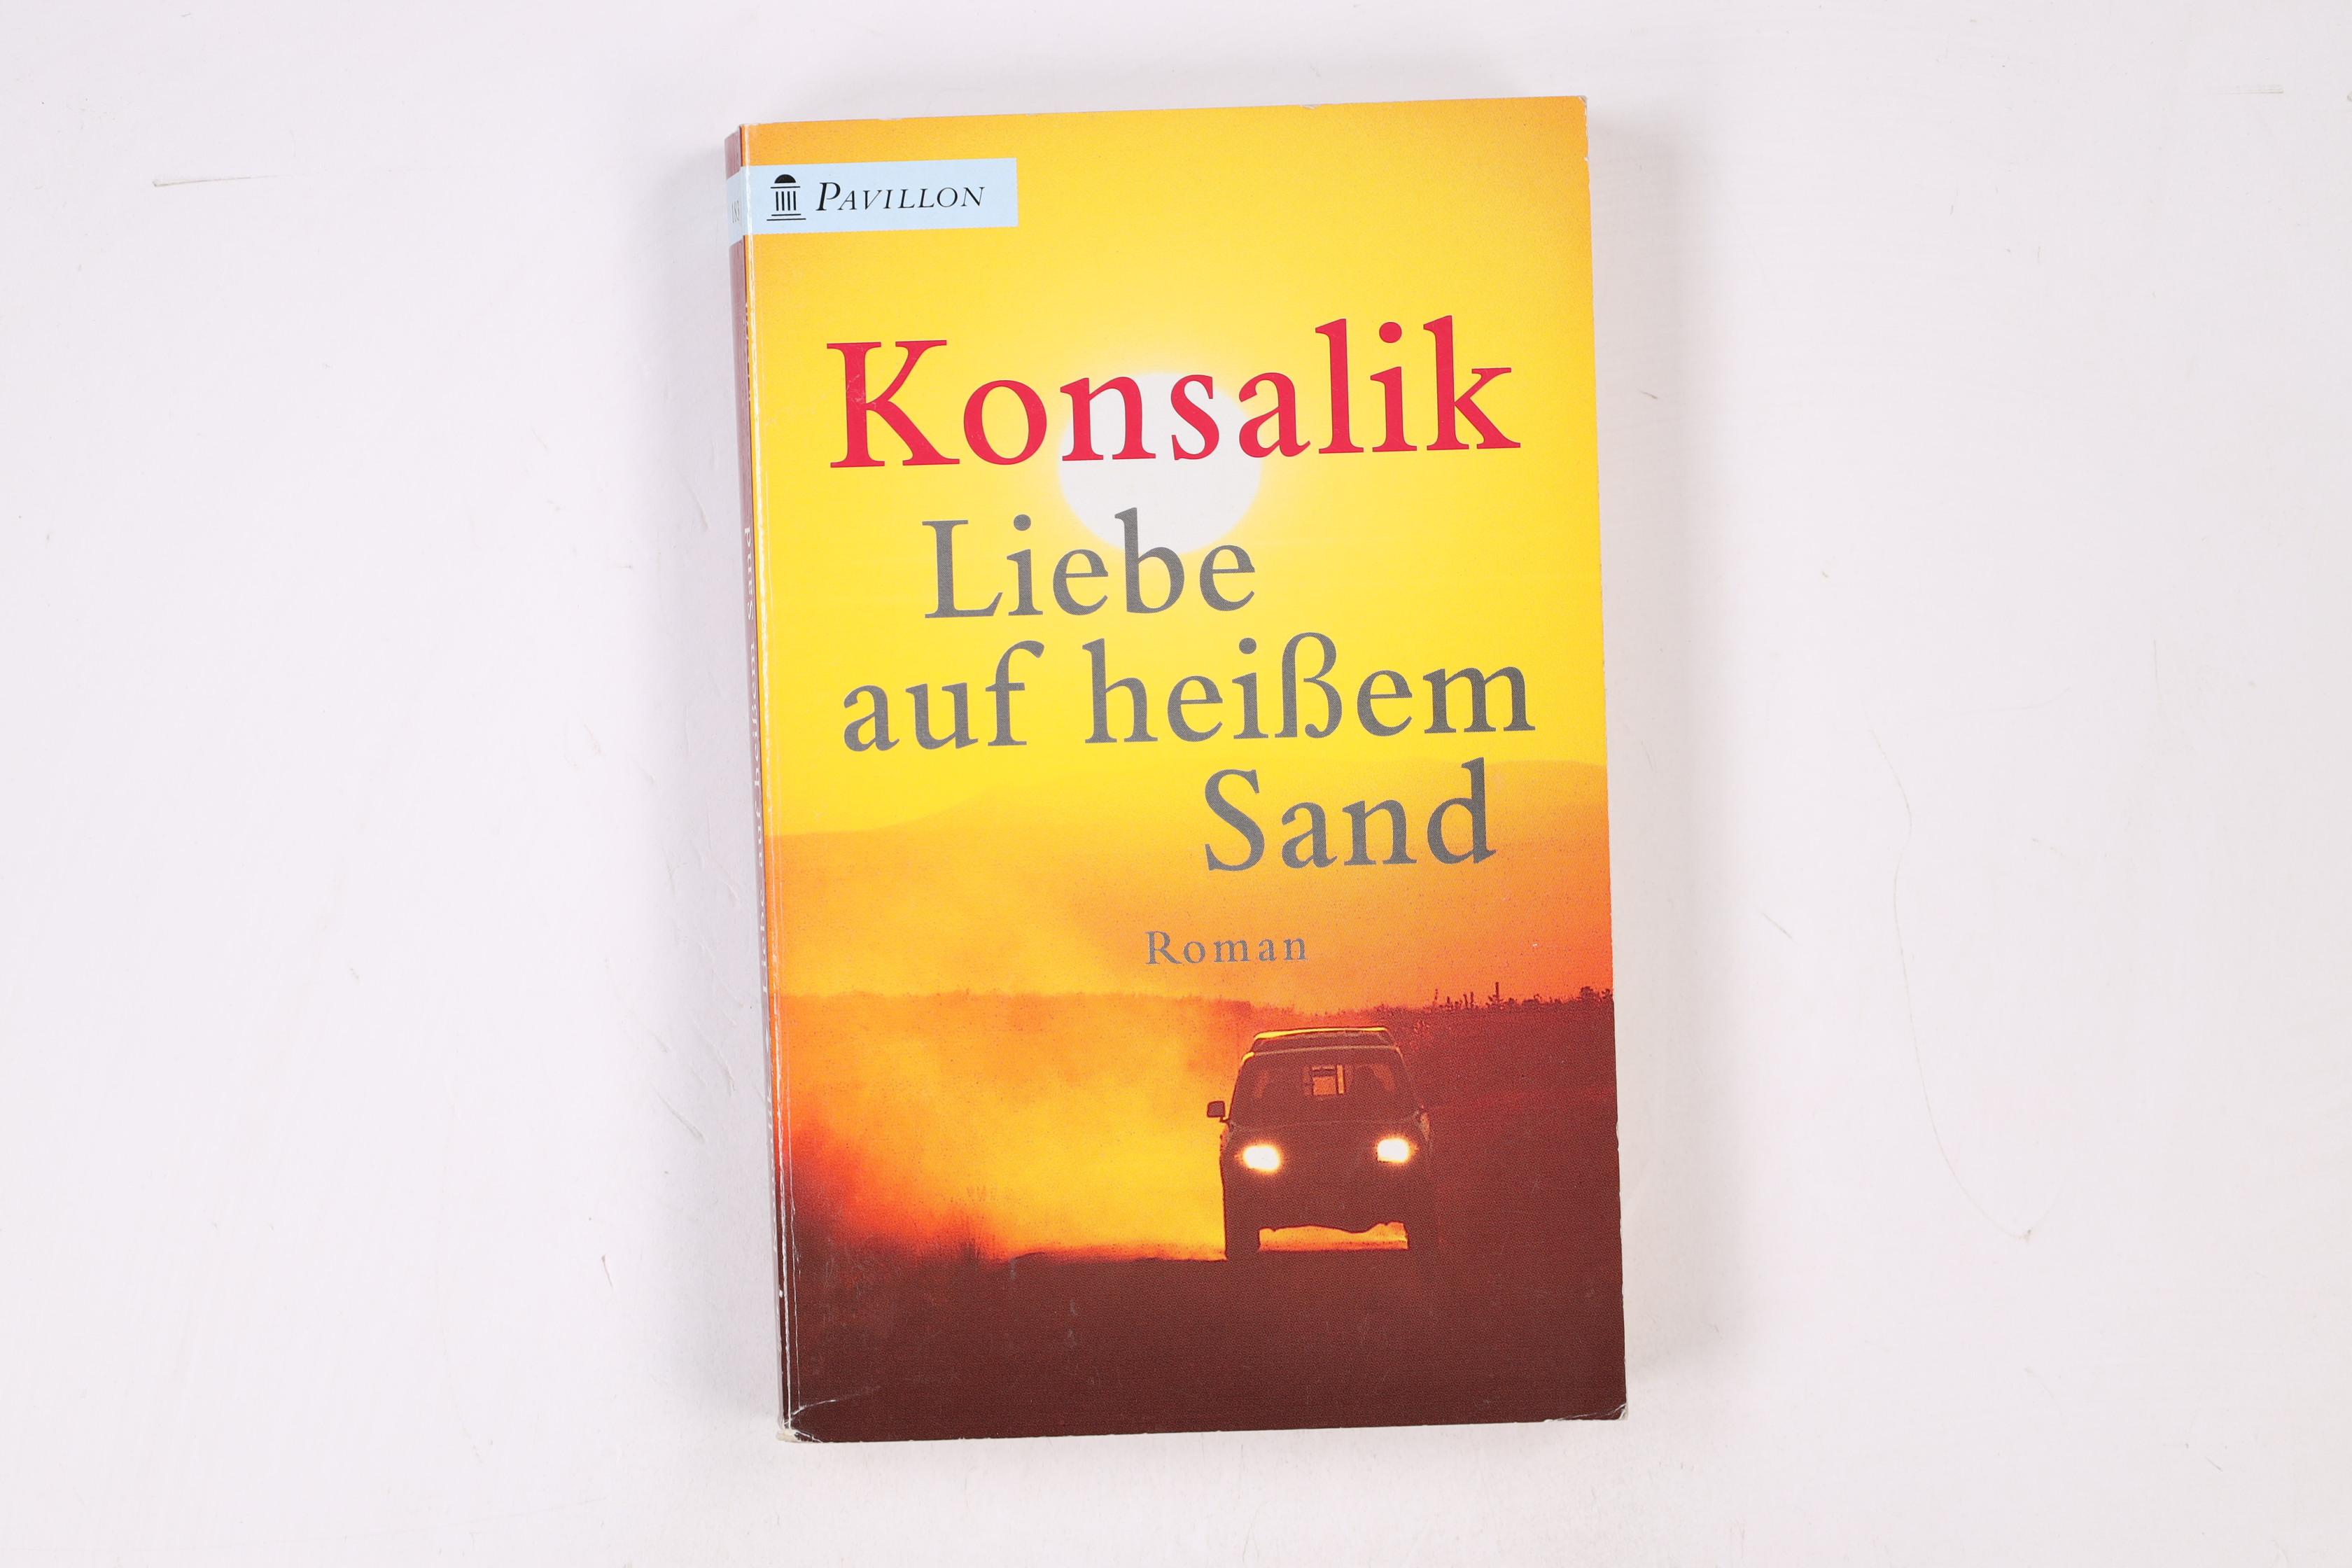 LIEBE AUF HEISSEM SAND. Roman - Konsalik, Heinz G.